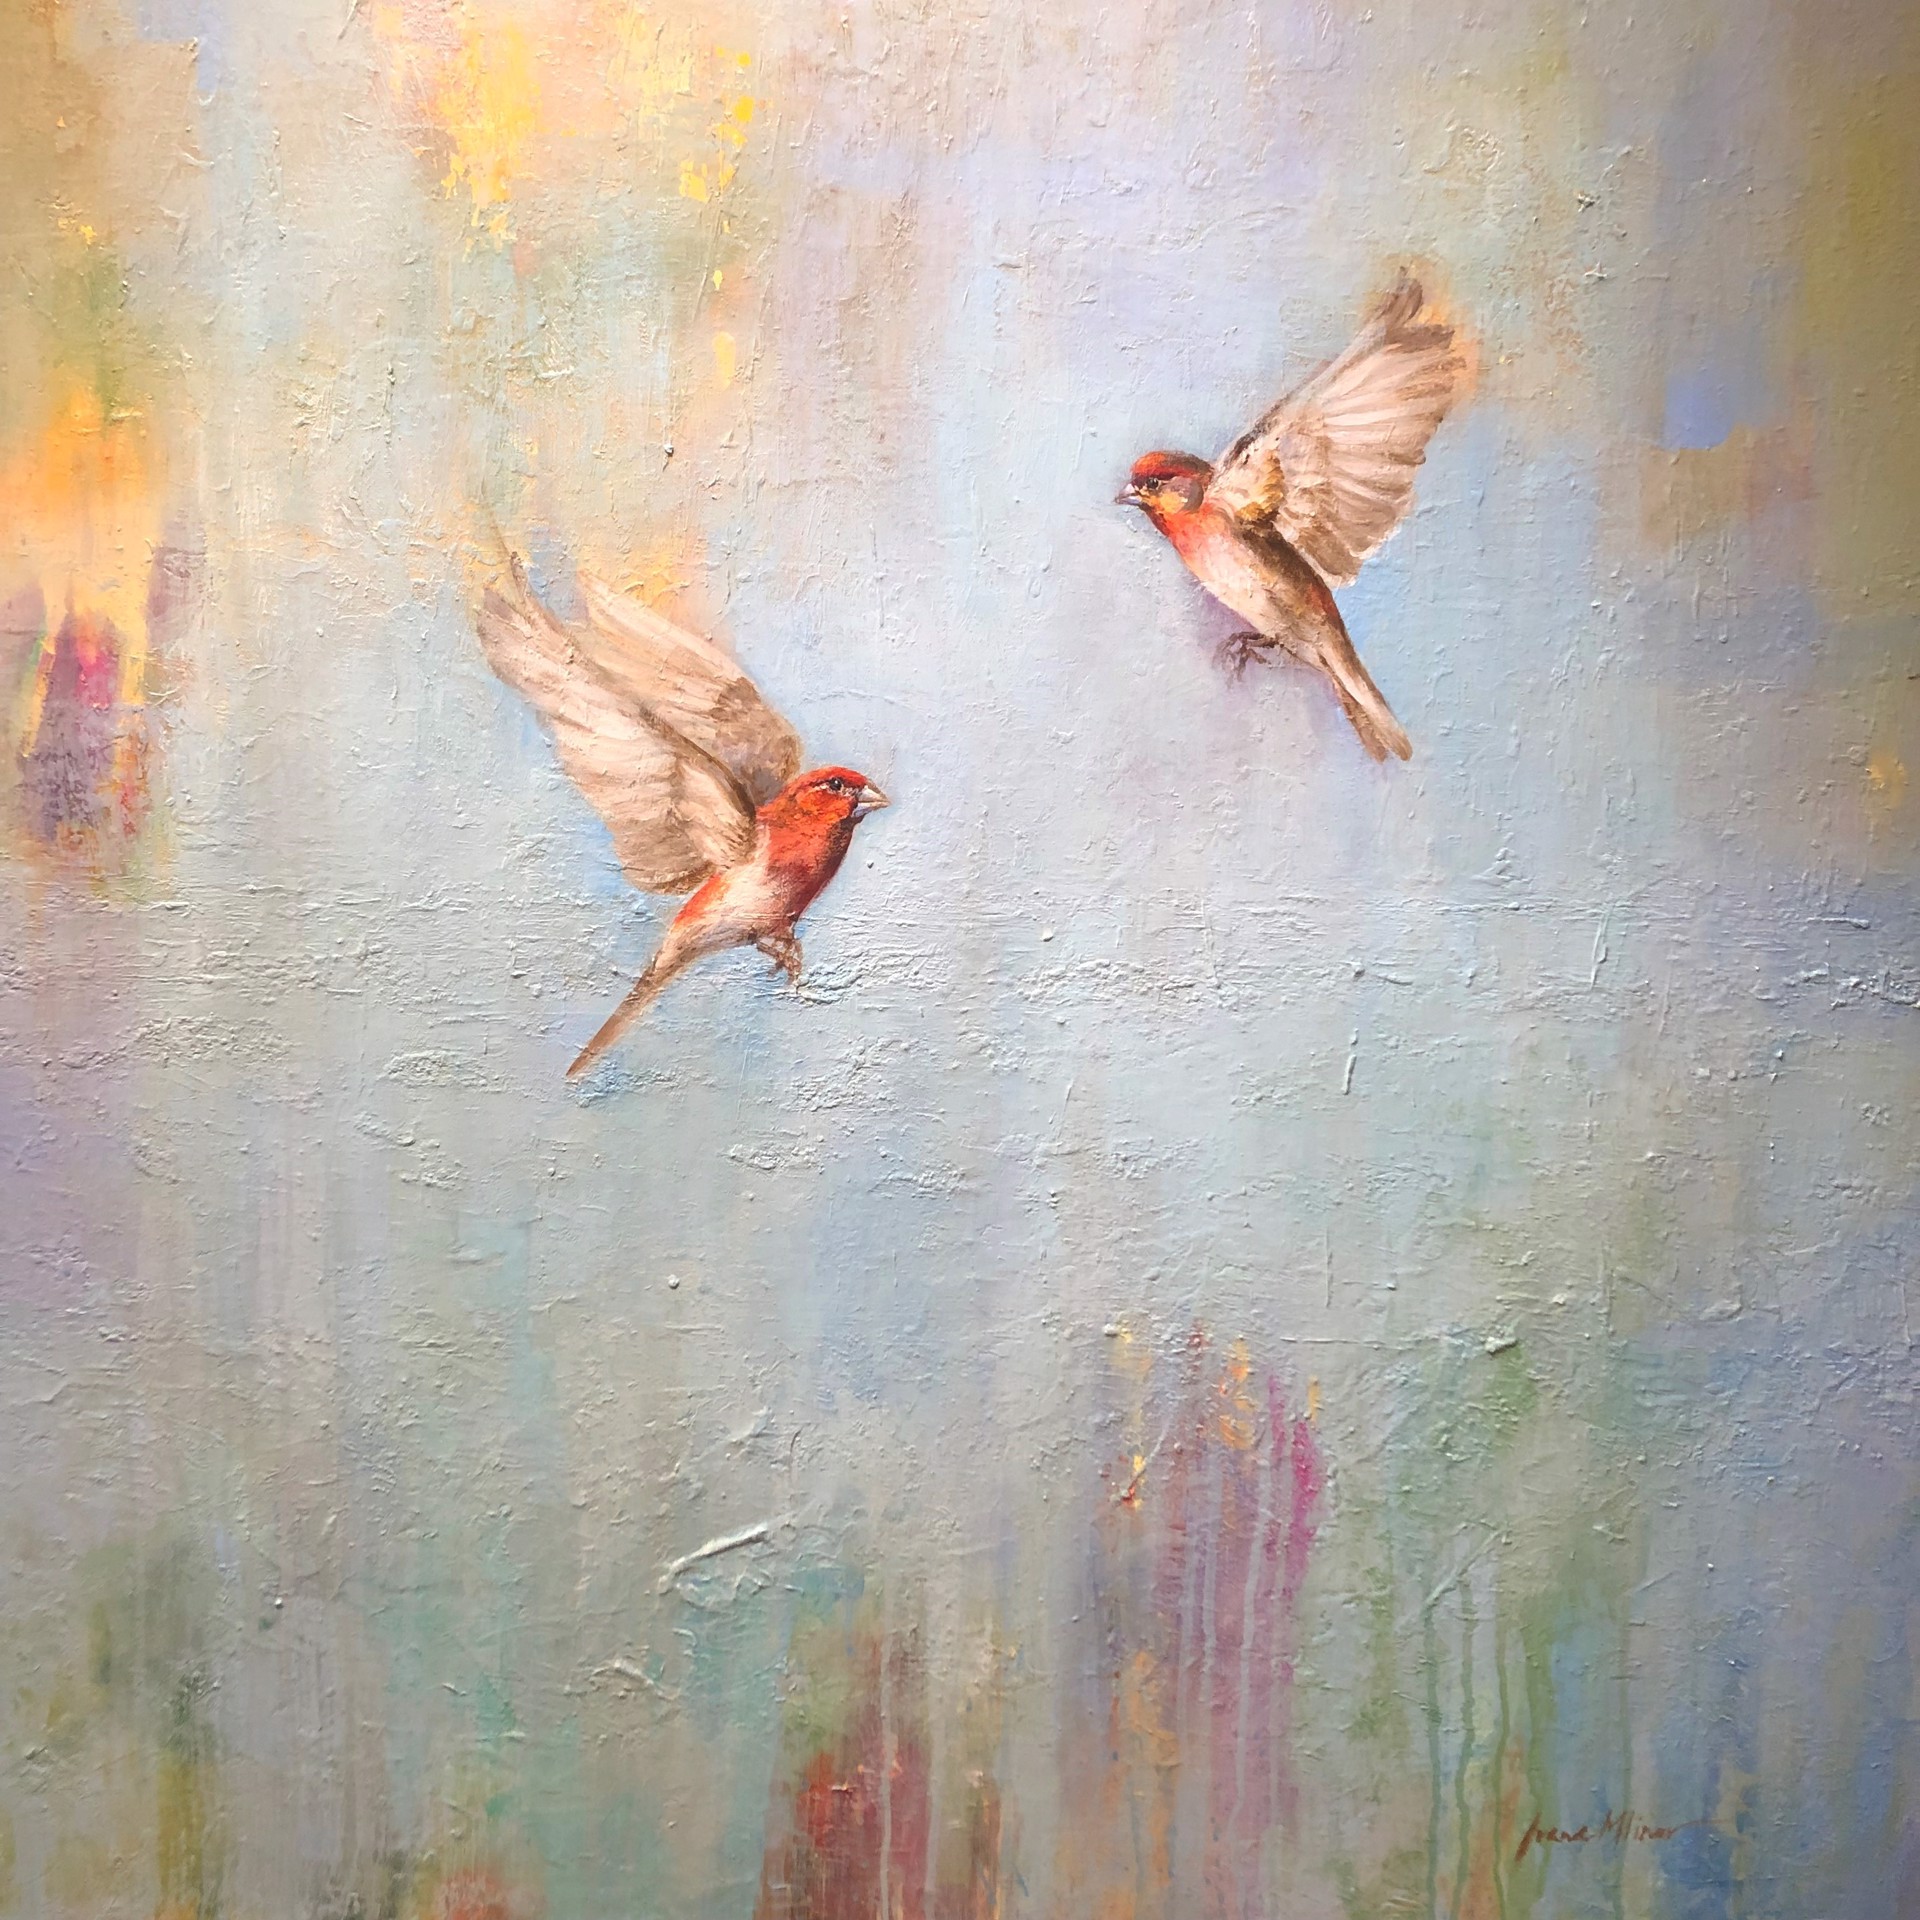 In Flight by Ivana Mlinar